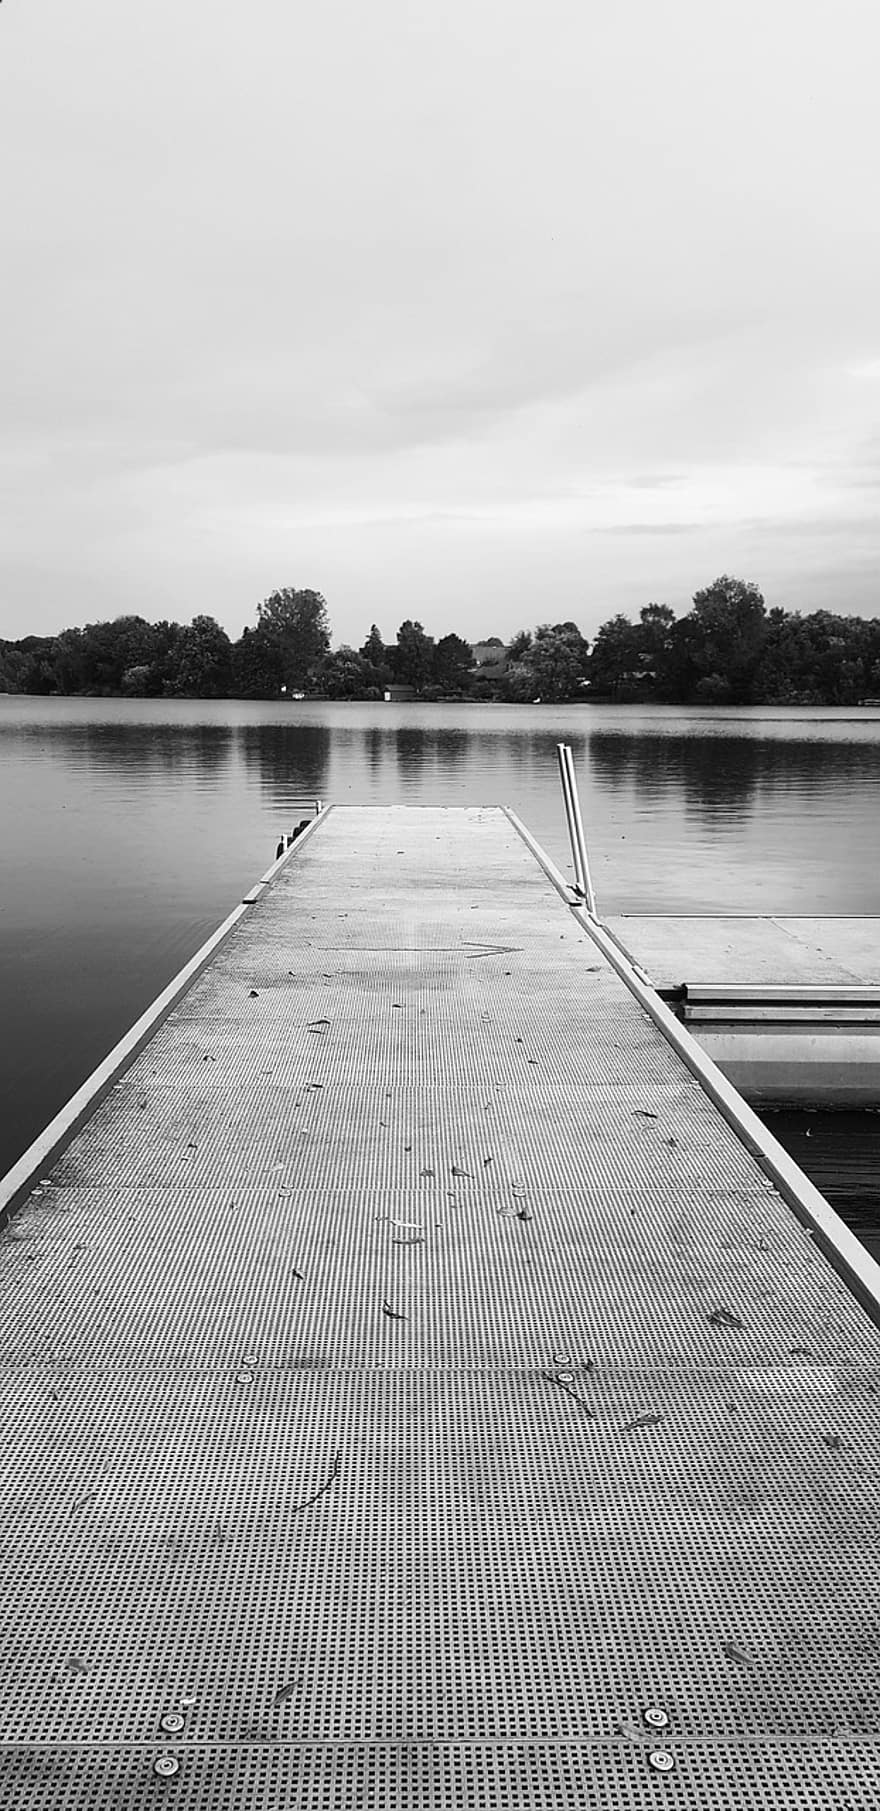 Dock, Lac, en plein air, monochrome, la nature, eau, jetée, paysage, scène tranquille, bois, noir et blanc